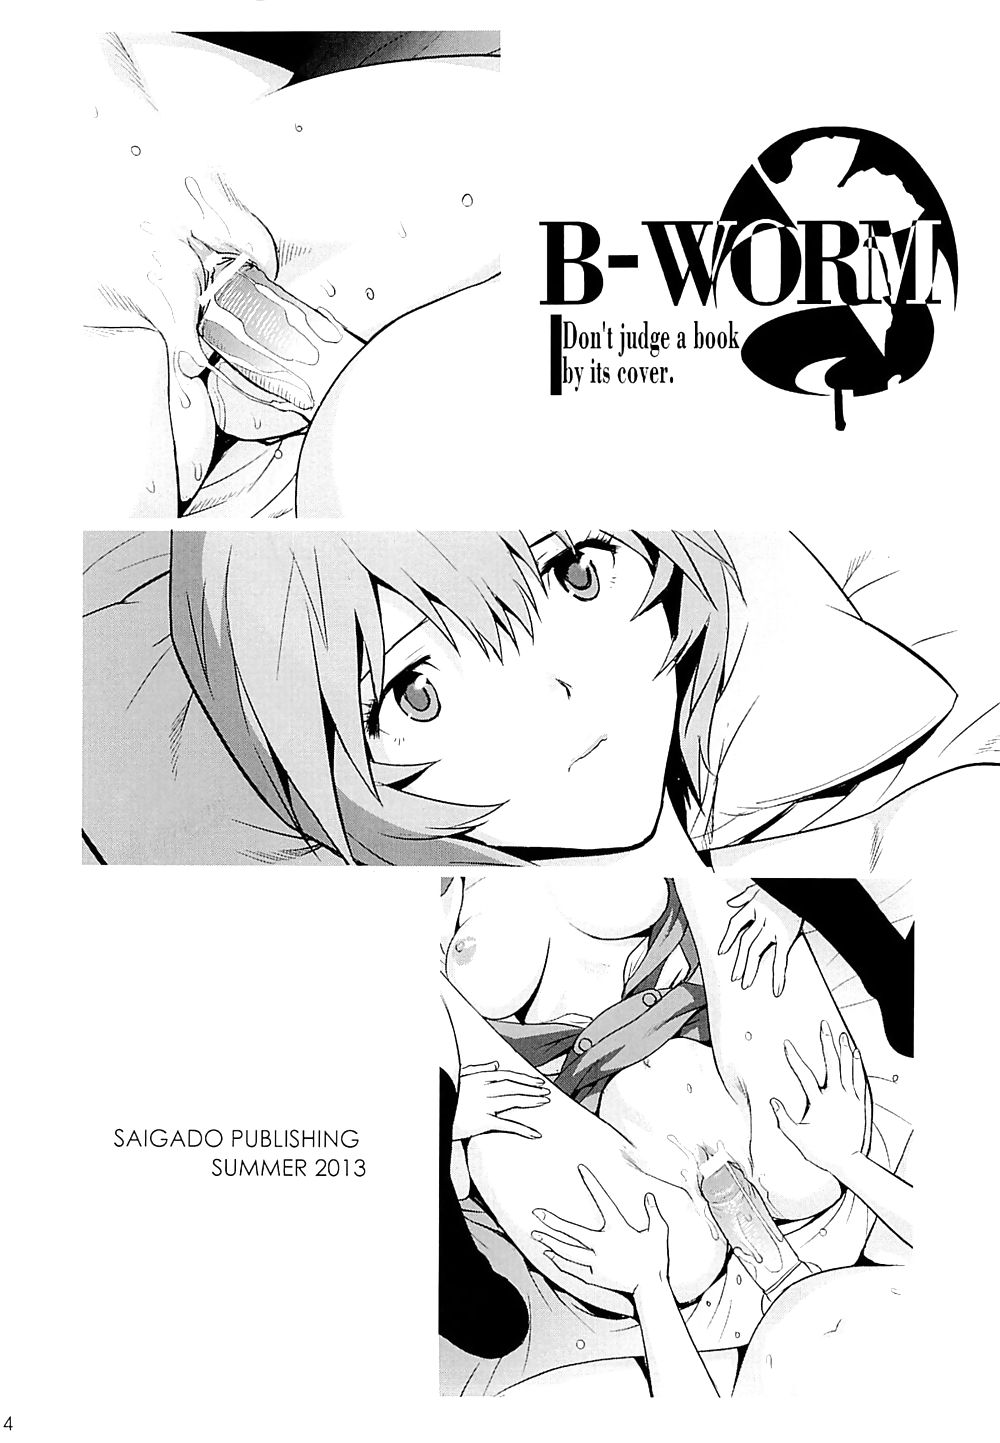 ヱヴァンゲリヲン新劇場版 - b-worm
 #21401061